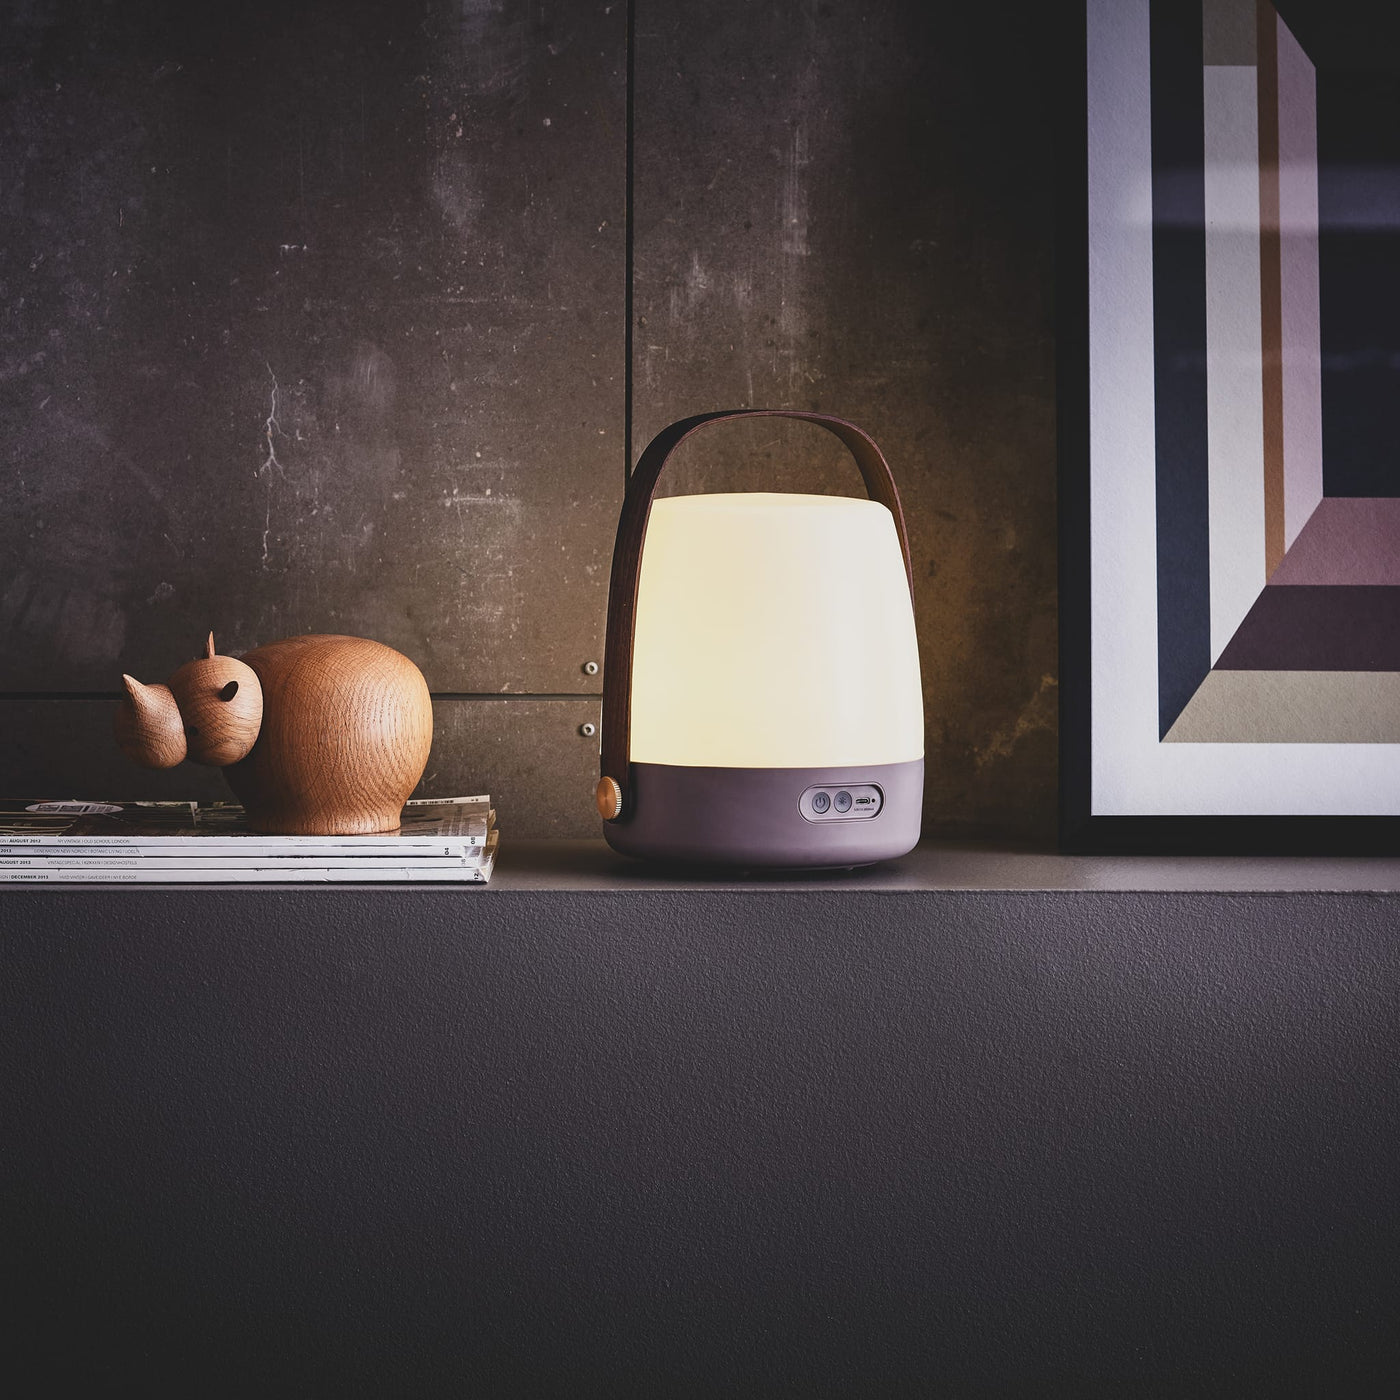 Emportez la lampe Lite-up de kooduu partout avec vous grâce à sa batterie rechargeable et sa poignée en bois. Parfaite pour toutes les occasions.